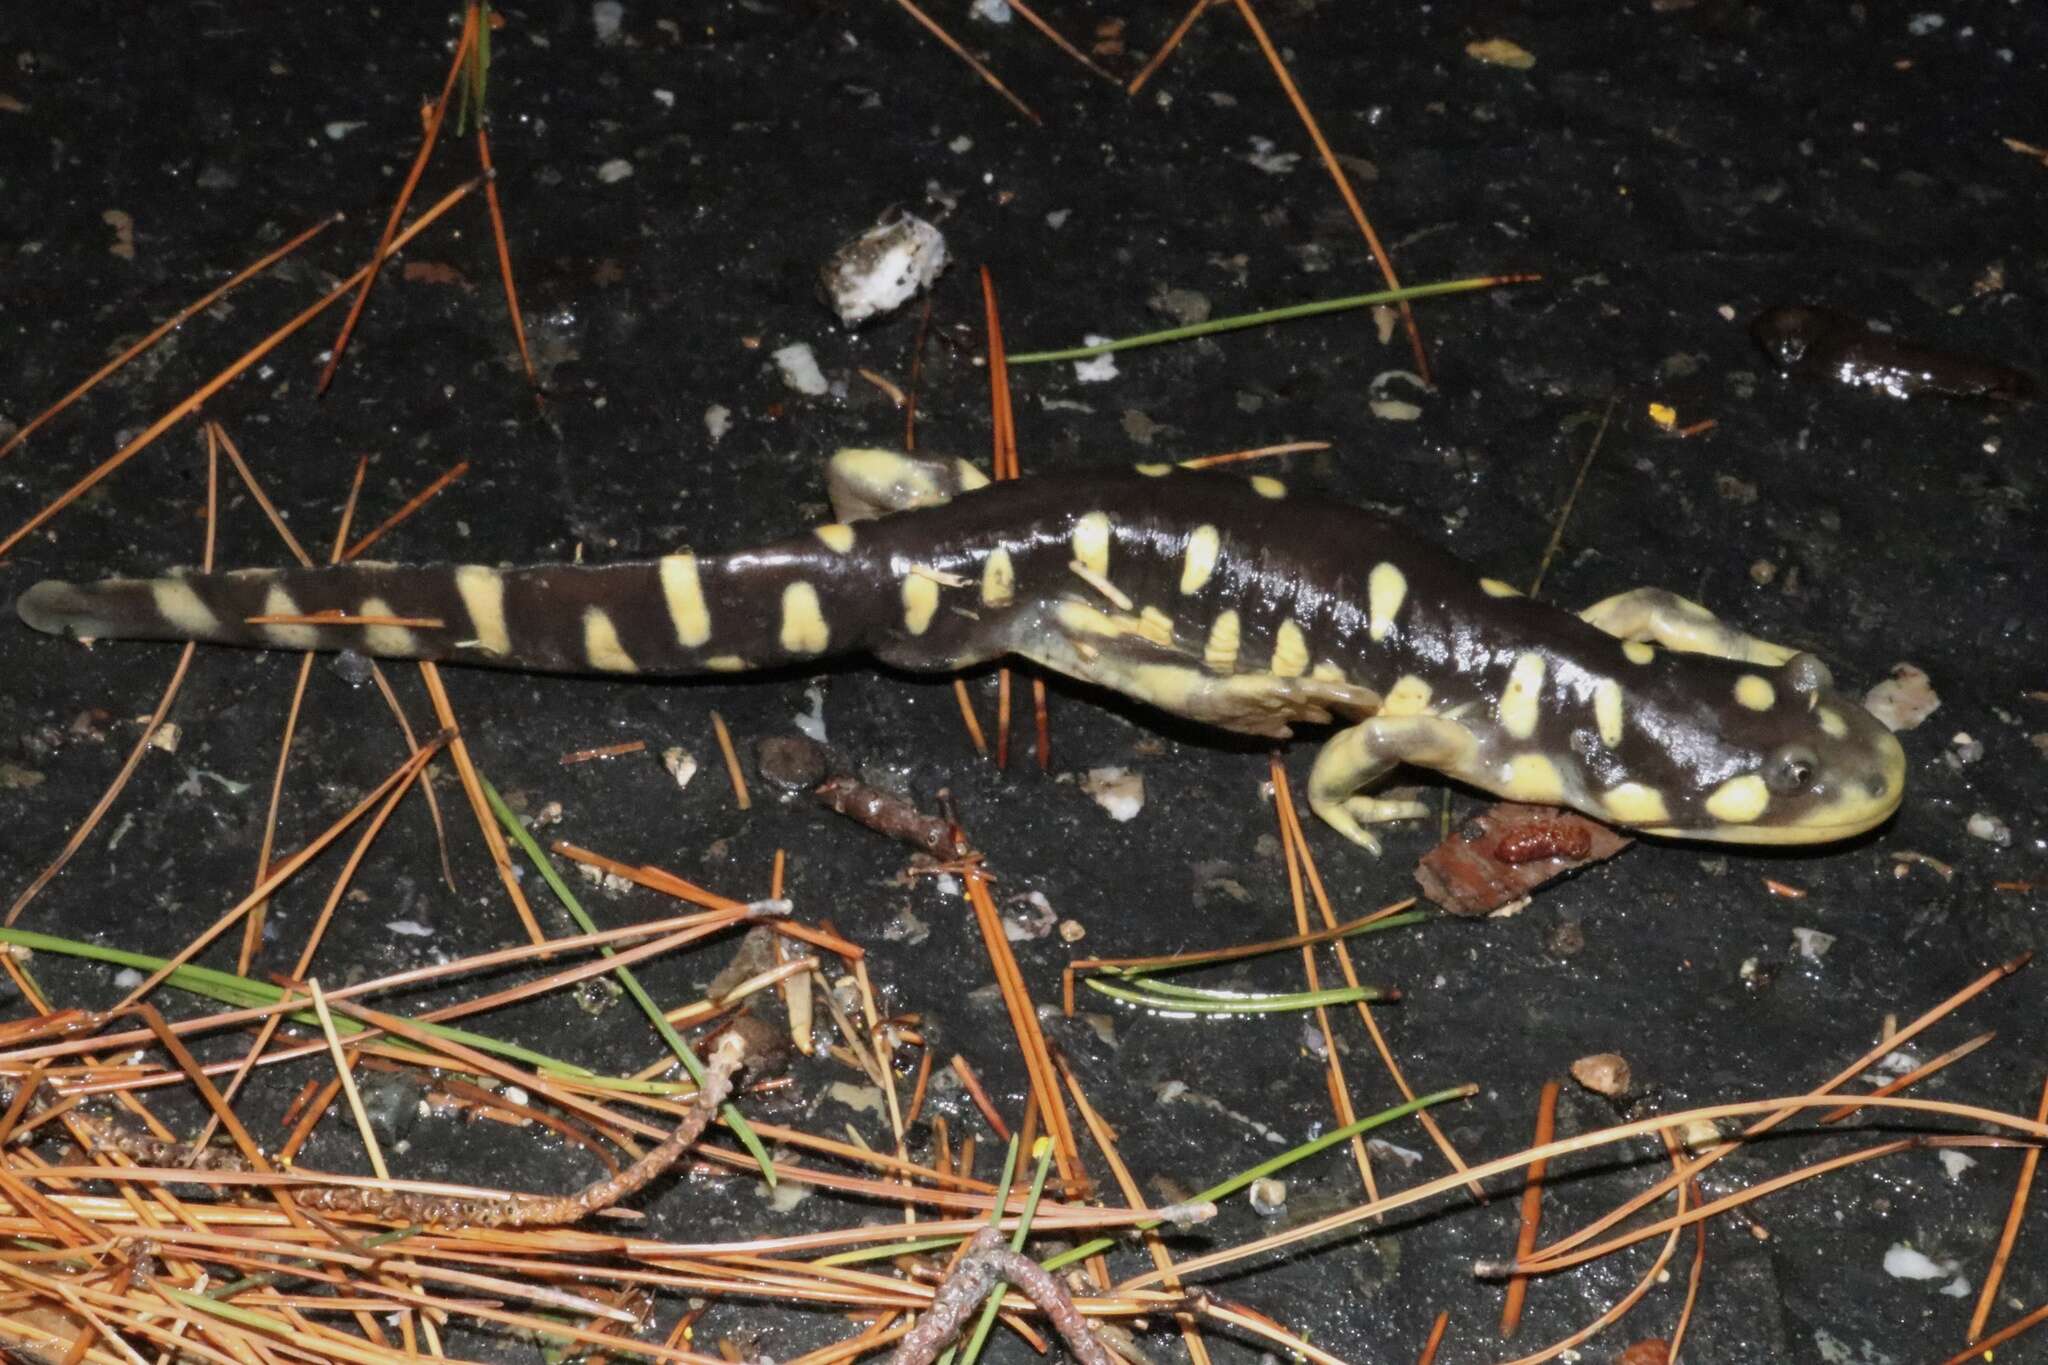 Image of California Tiger Salamander